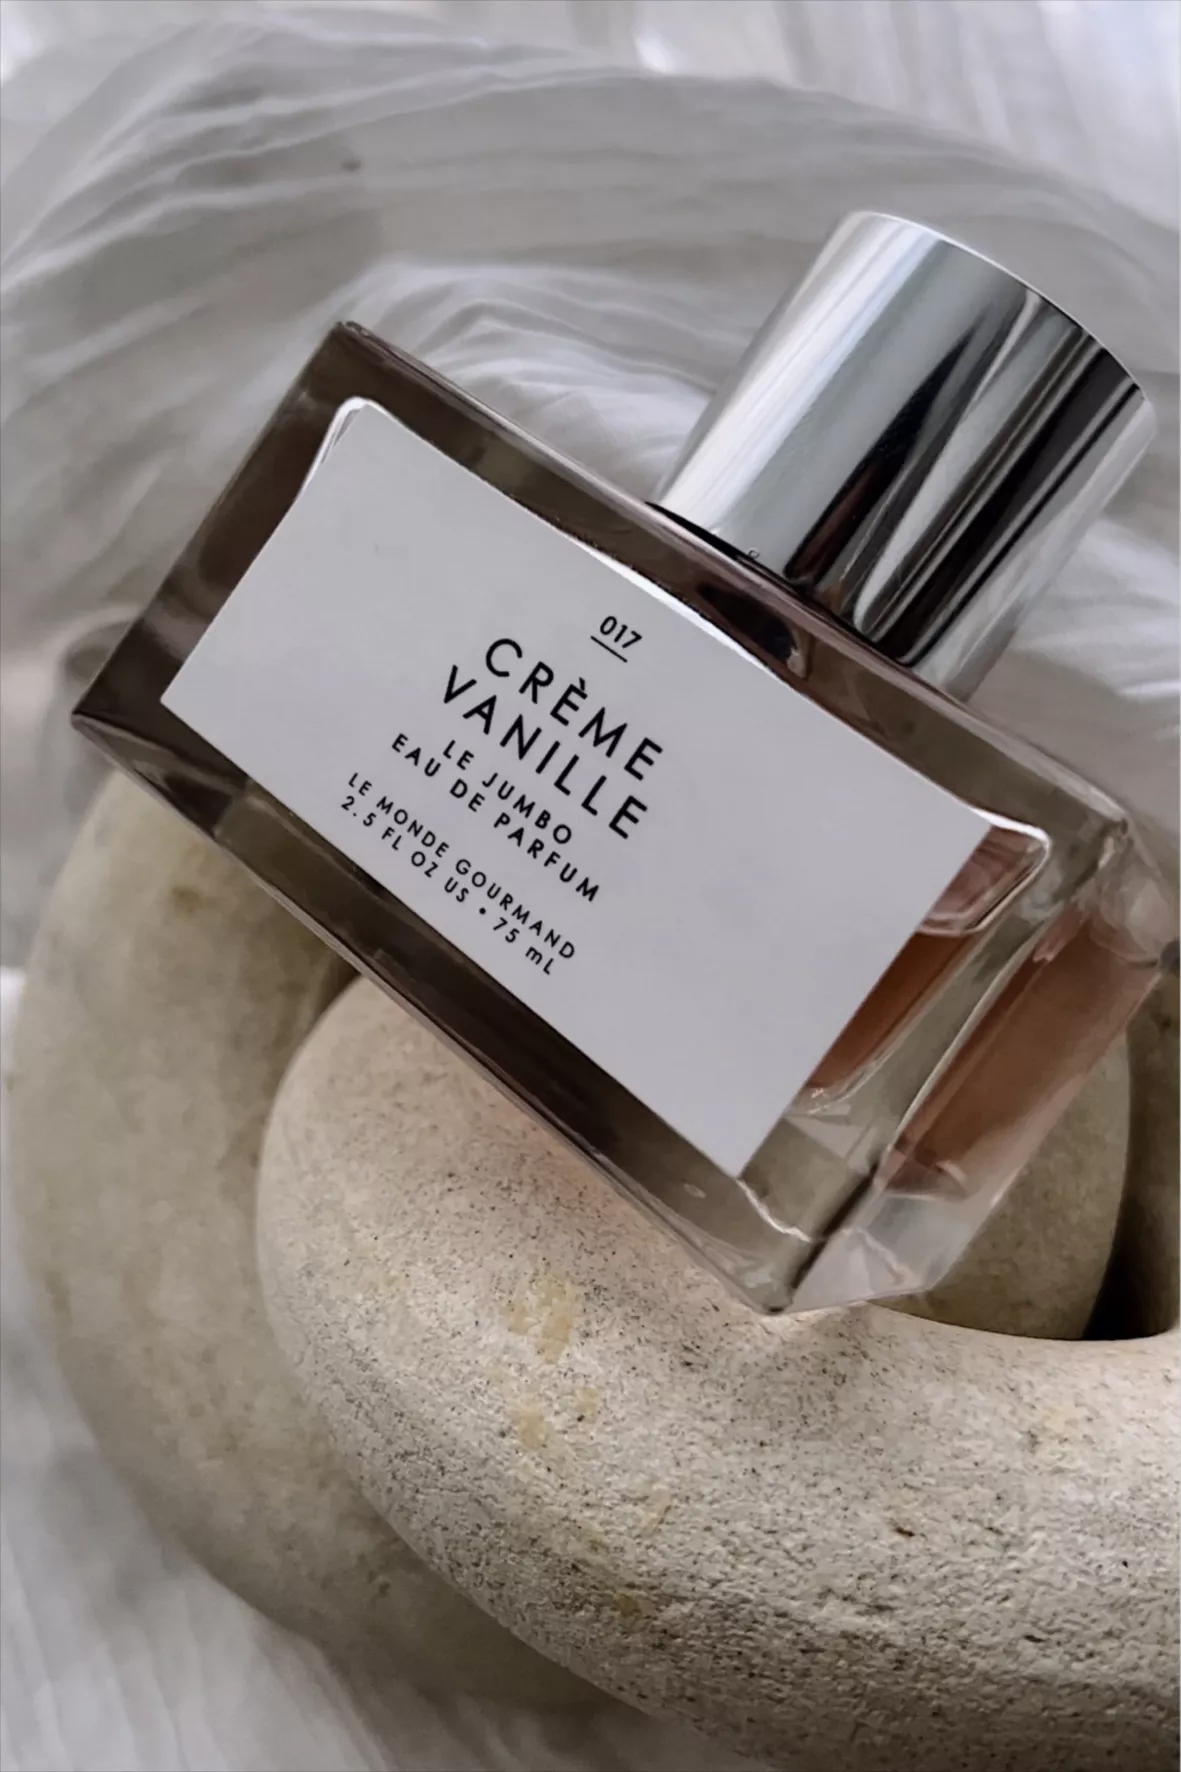 Crème Vanille Eau de Parfum